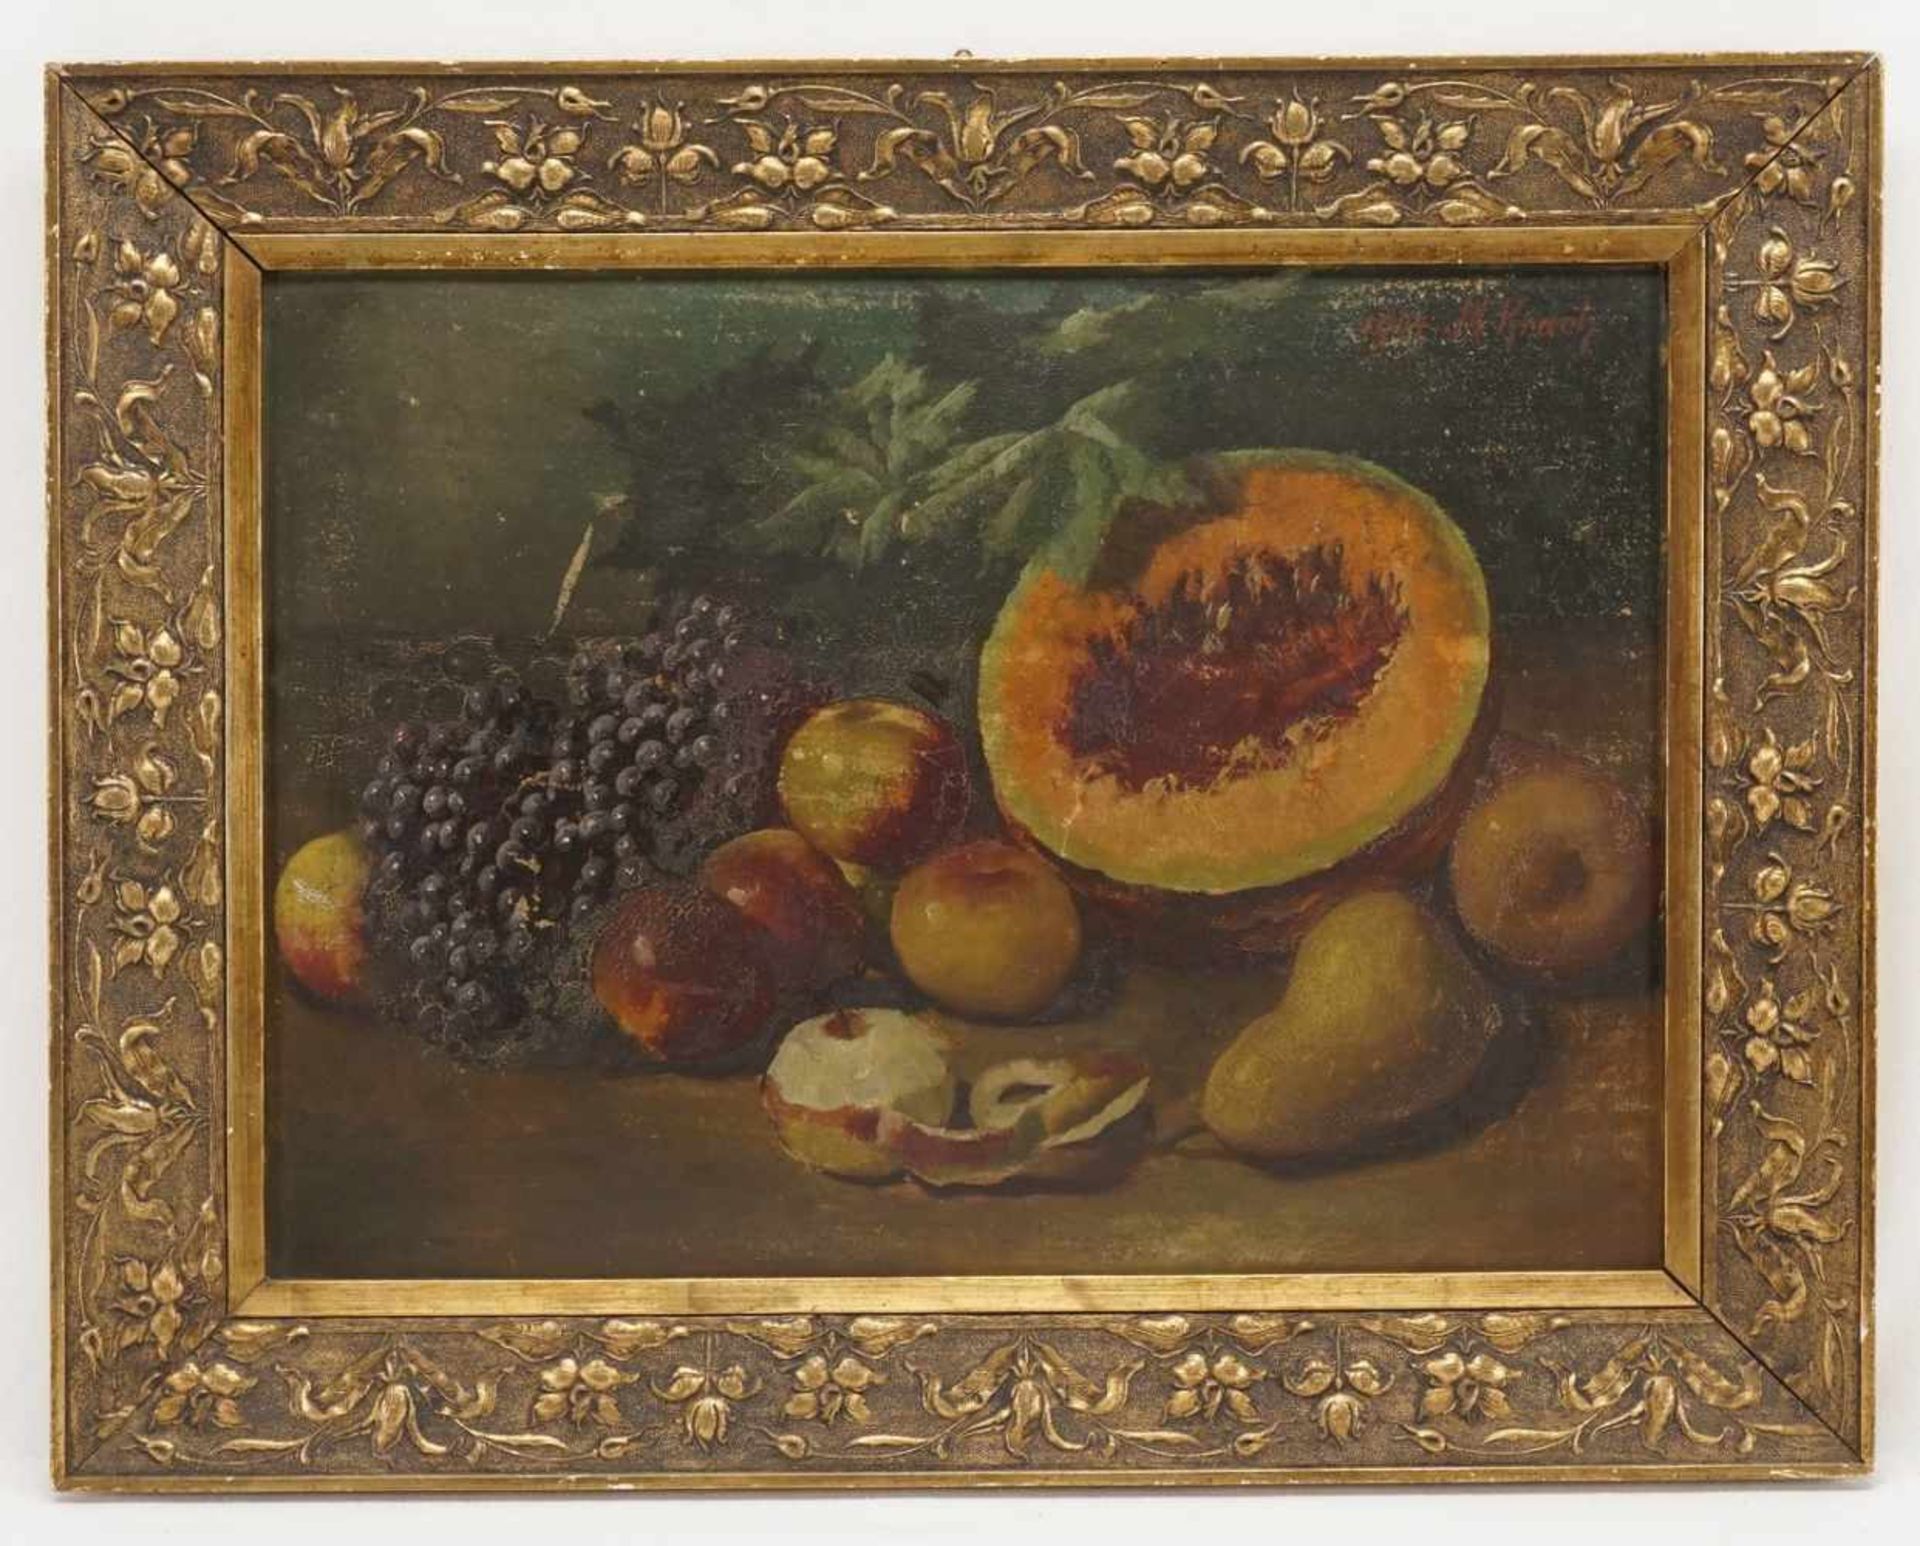 M. Krach, "Stillleben mit Melone, Trauben und Äpfeln"